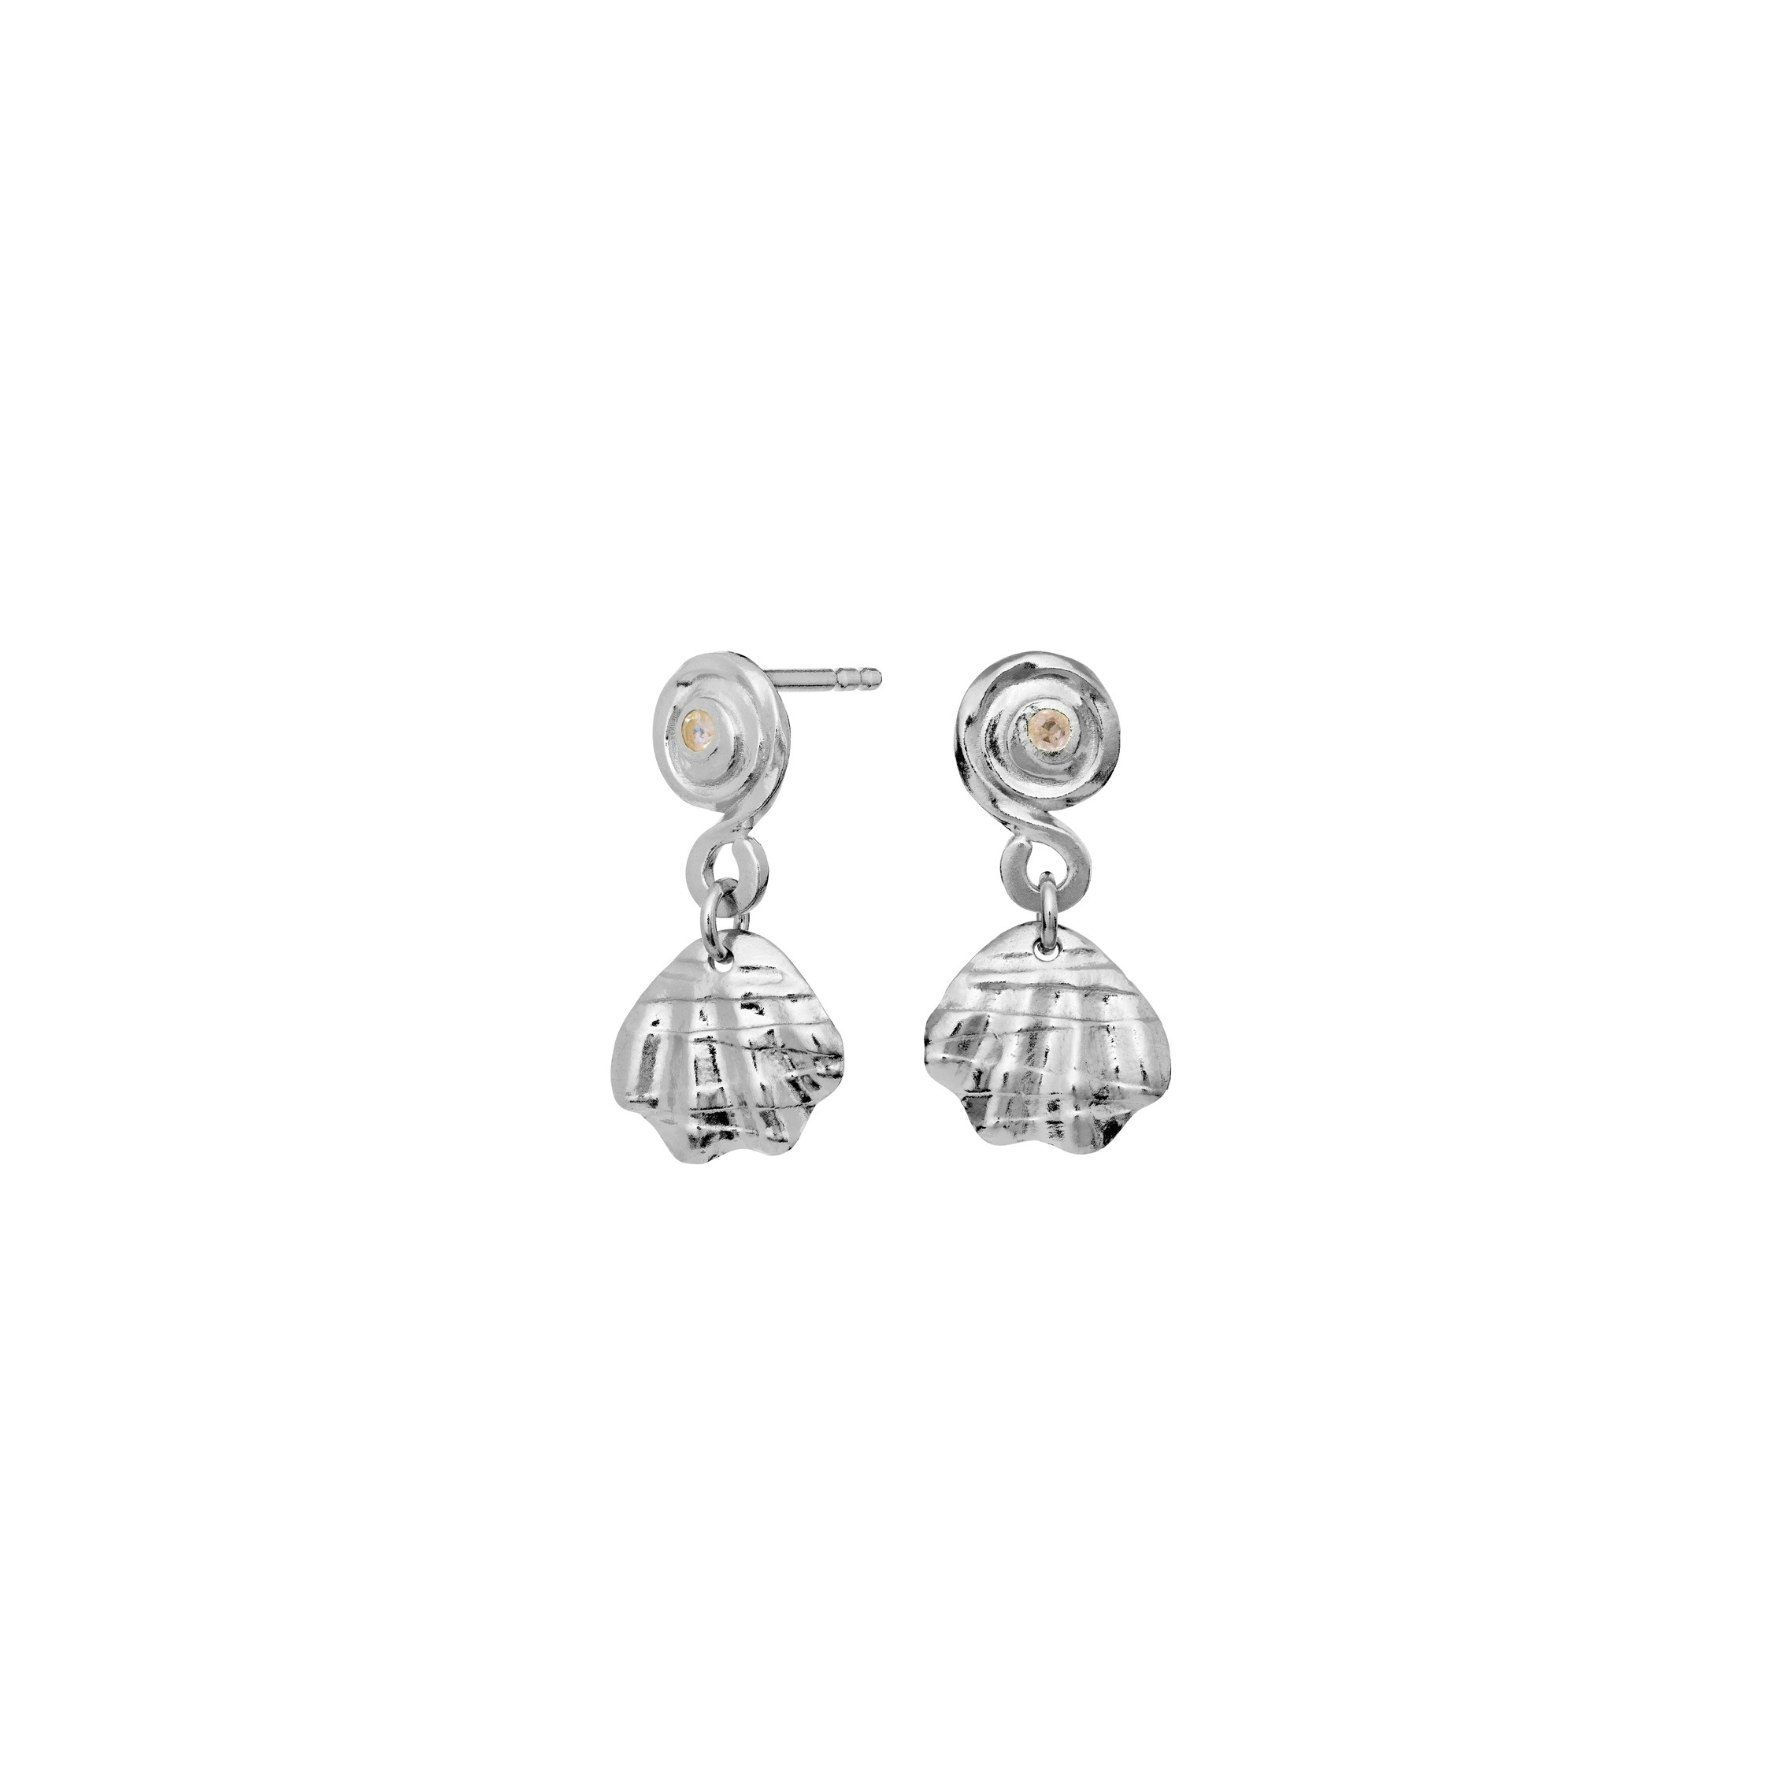 Conca Earrings from Maanesten in Silver Sterling 925